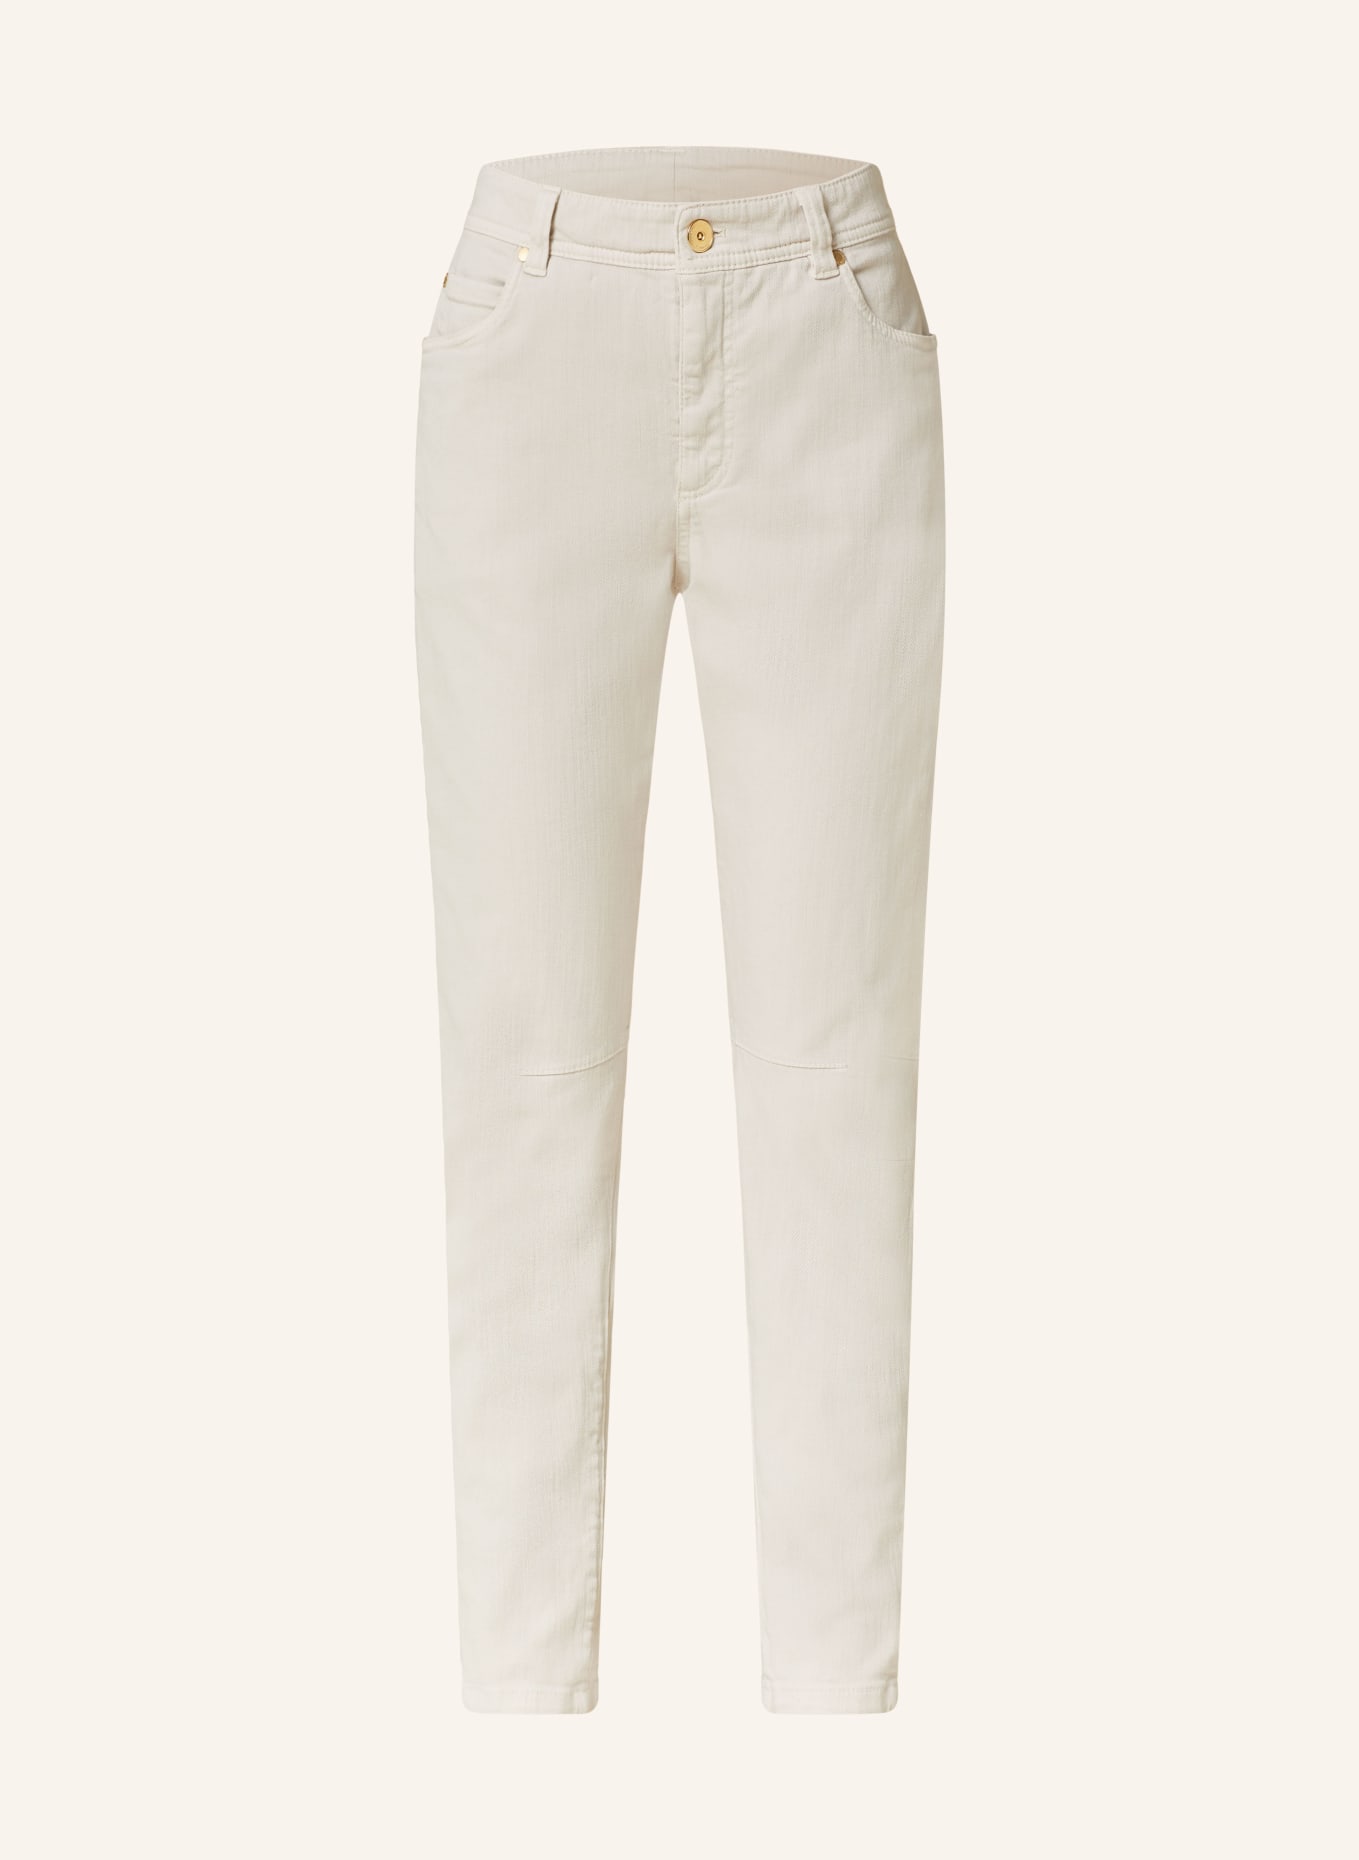 BRUNELLO CUCINELLI 7/8 jeans, Color: CREAM (Image 1)